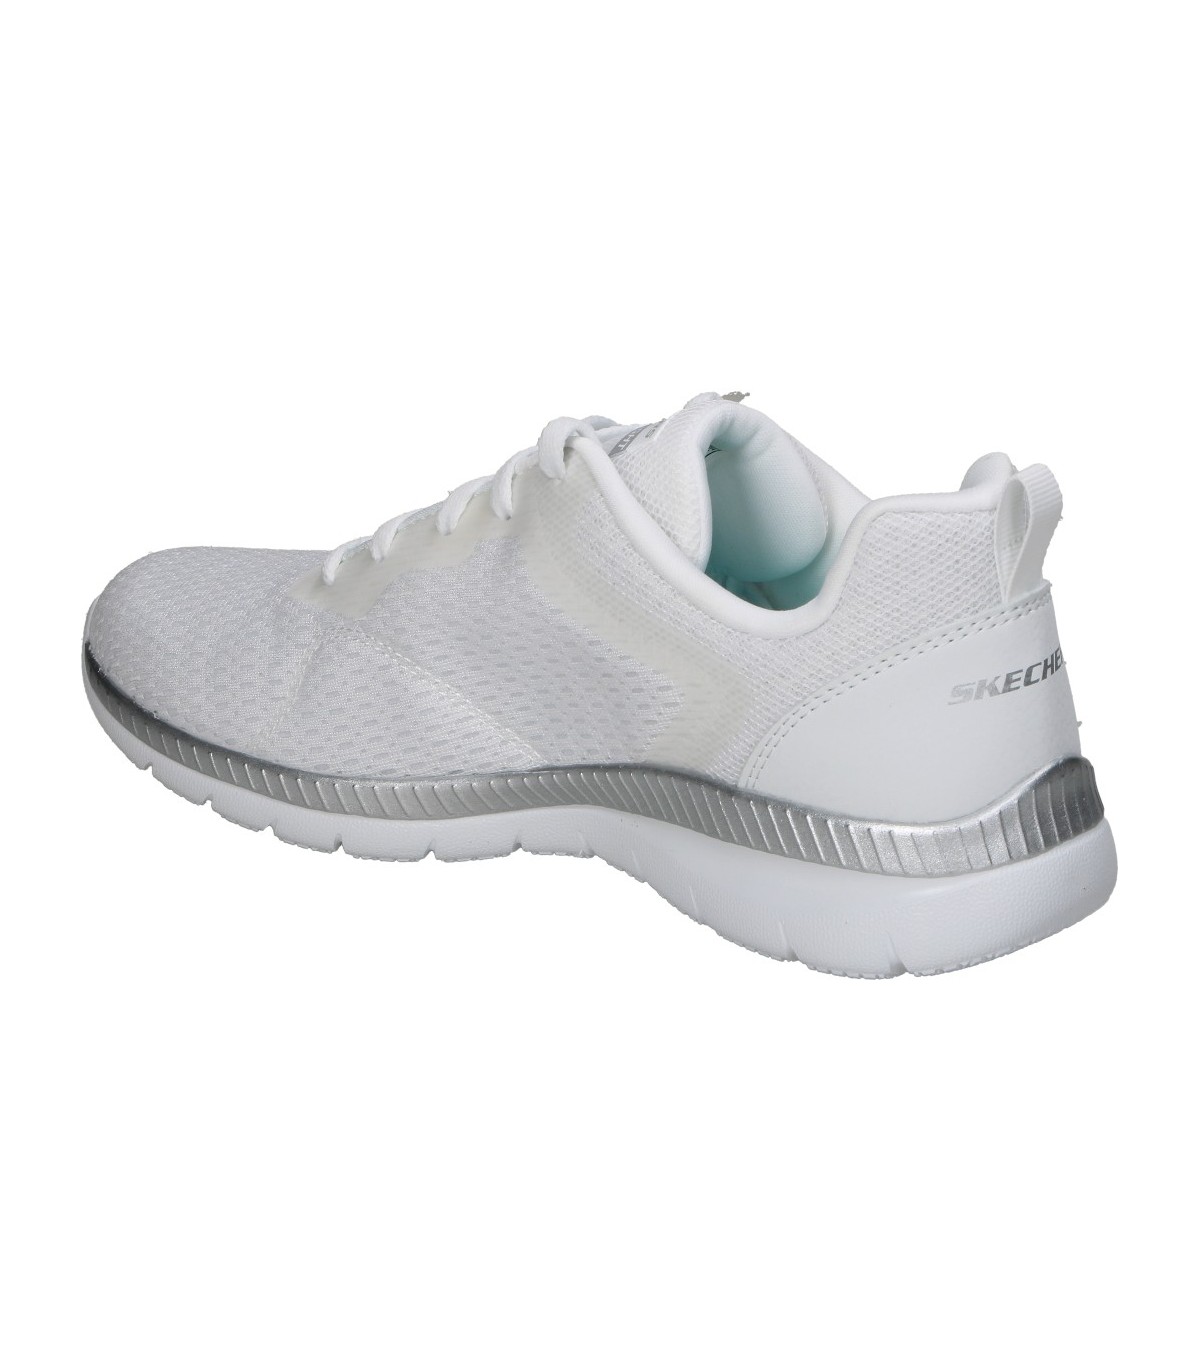 Zapatillas blancas de mujer Skechers Lovely Luv online en MEGACALZADO